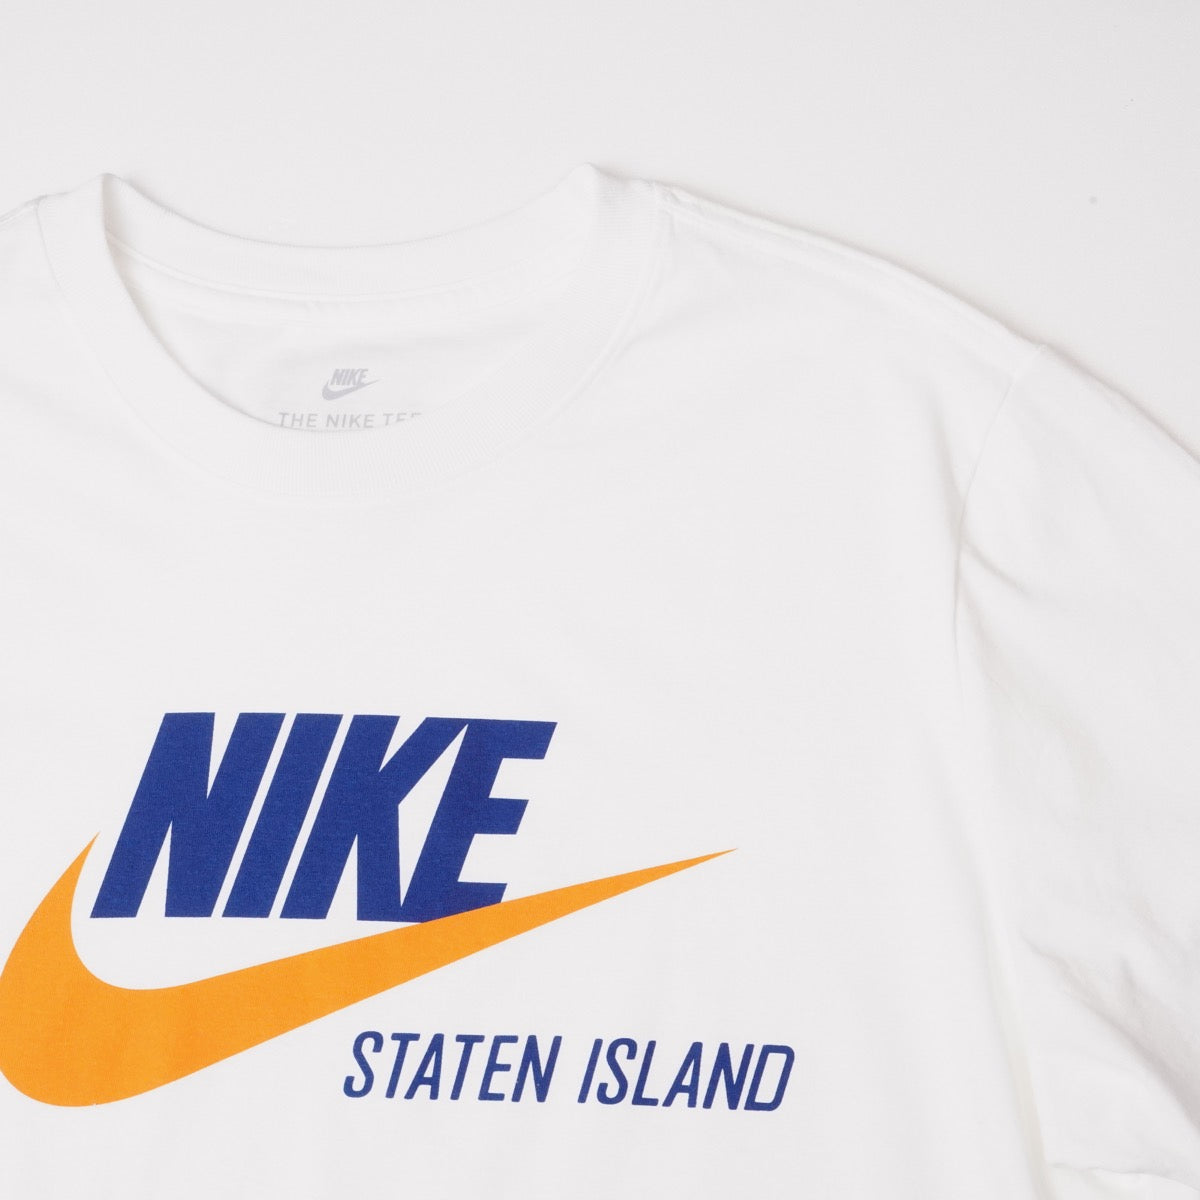 NIKE STATEN ISLAND WHITE SWOOSH ナイキ スタテンアイランド限定 ホワイト スウッシュ Tシャツ TEE T-SHIRT